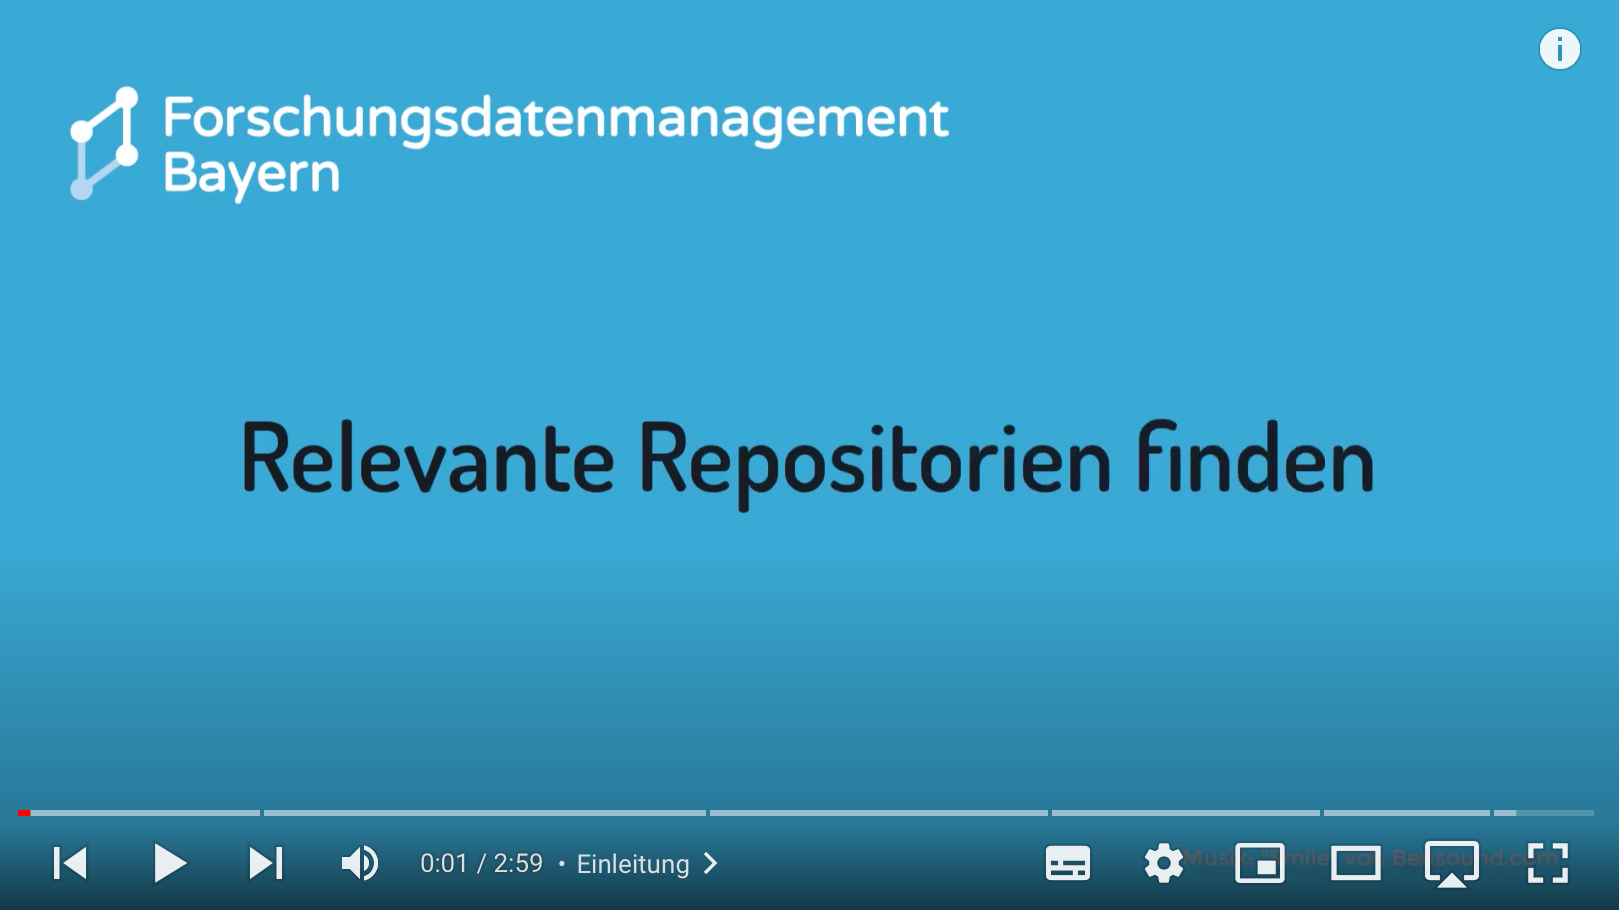 Link zu Video-Tutorial Relevante Repositorien finden_Forschungsdatenmanagement Bayern